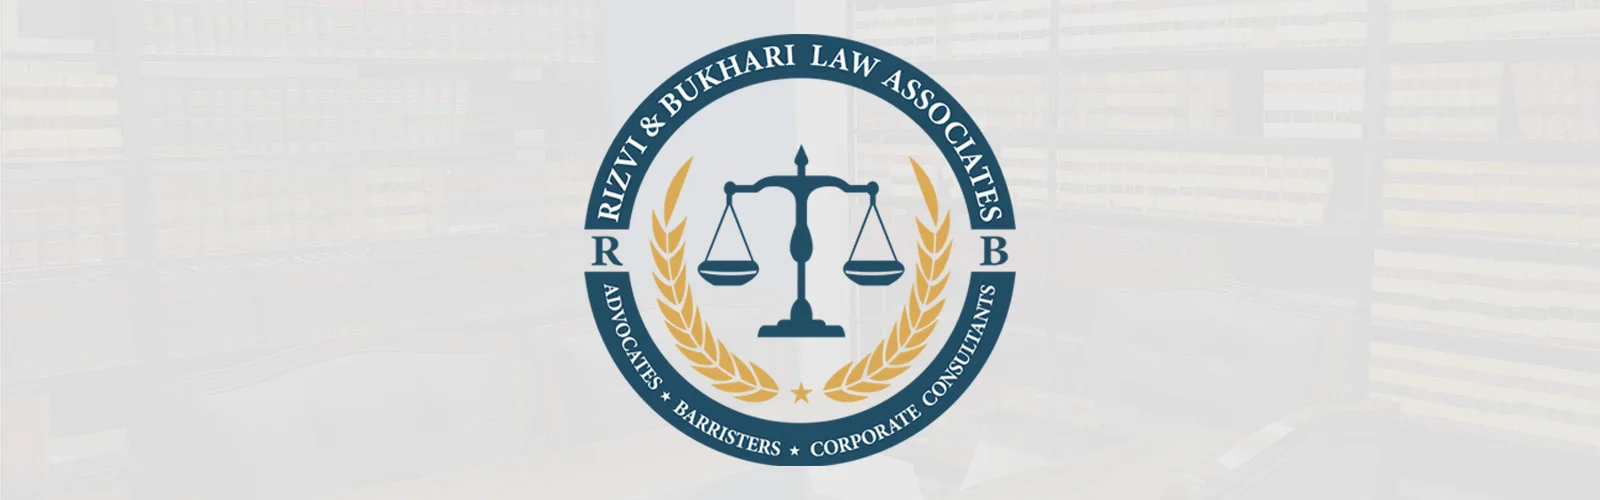 rizvi-&-bukhari-law-associate